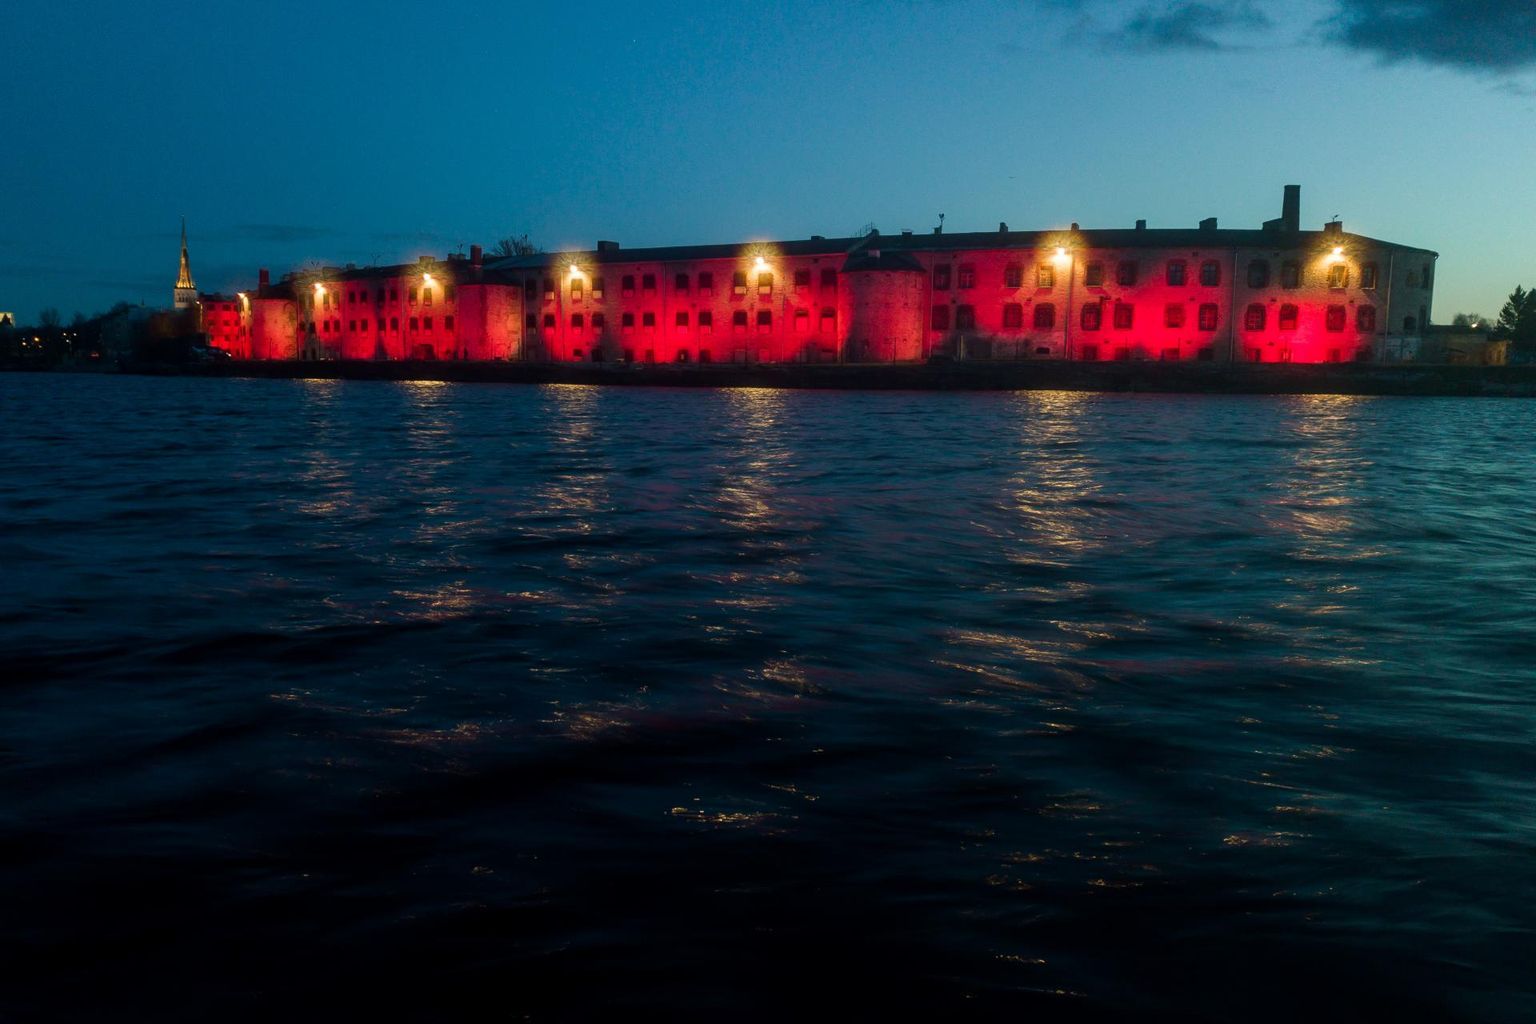 Mullusel märtsiküüditamise aastapäeval oli Tallinnas endise Patarei vangla hoone fassaadil punane valgusinstallatsioon.